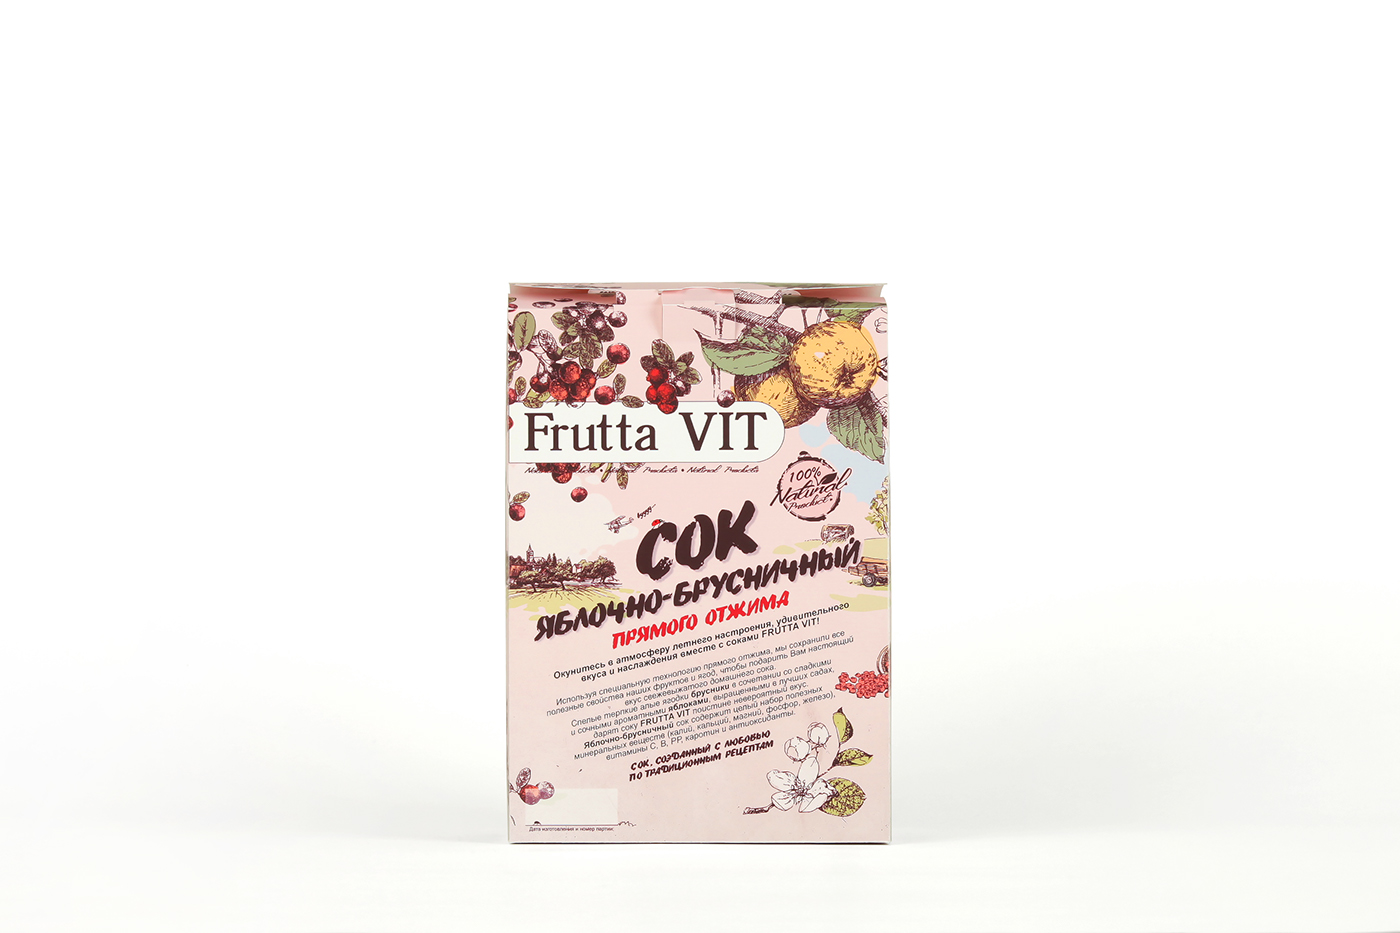 Logo Design package design  package ecopackaging healthy food Food  natural juice natural organic Packaging